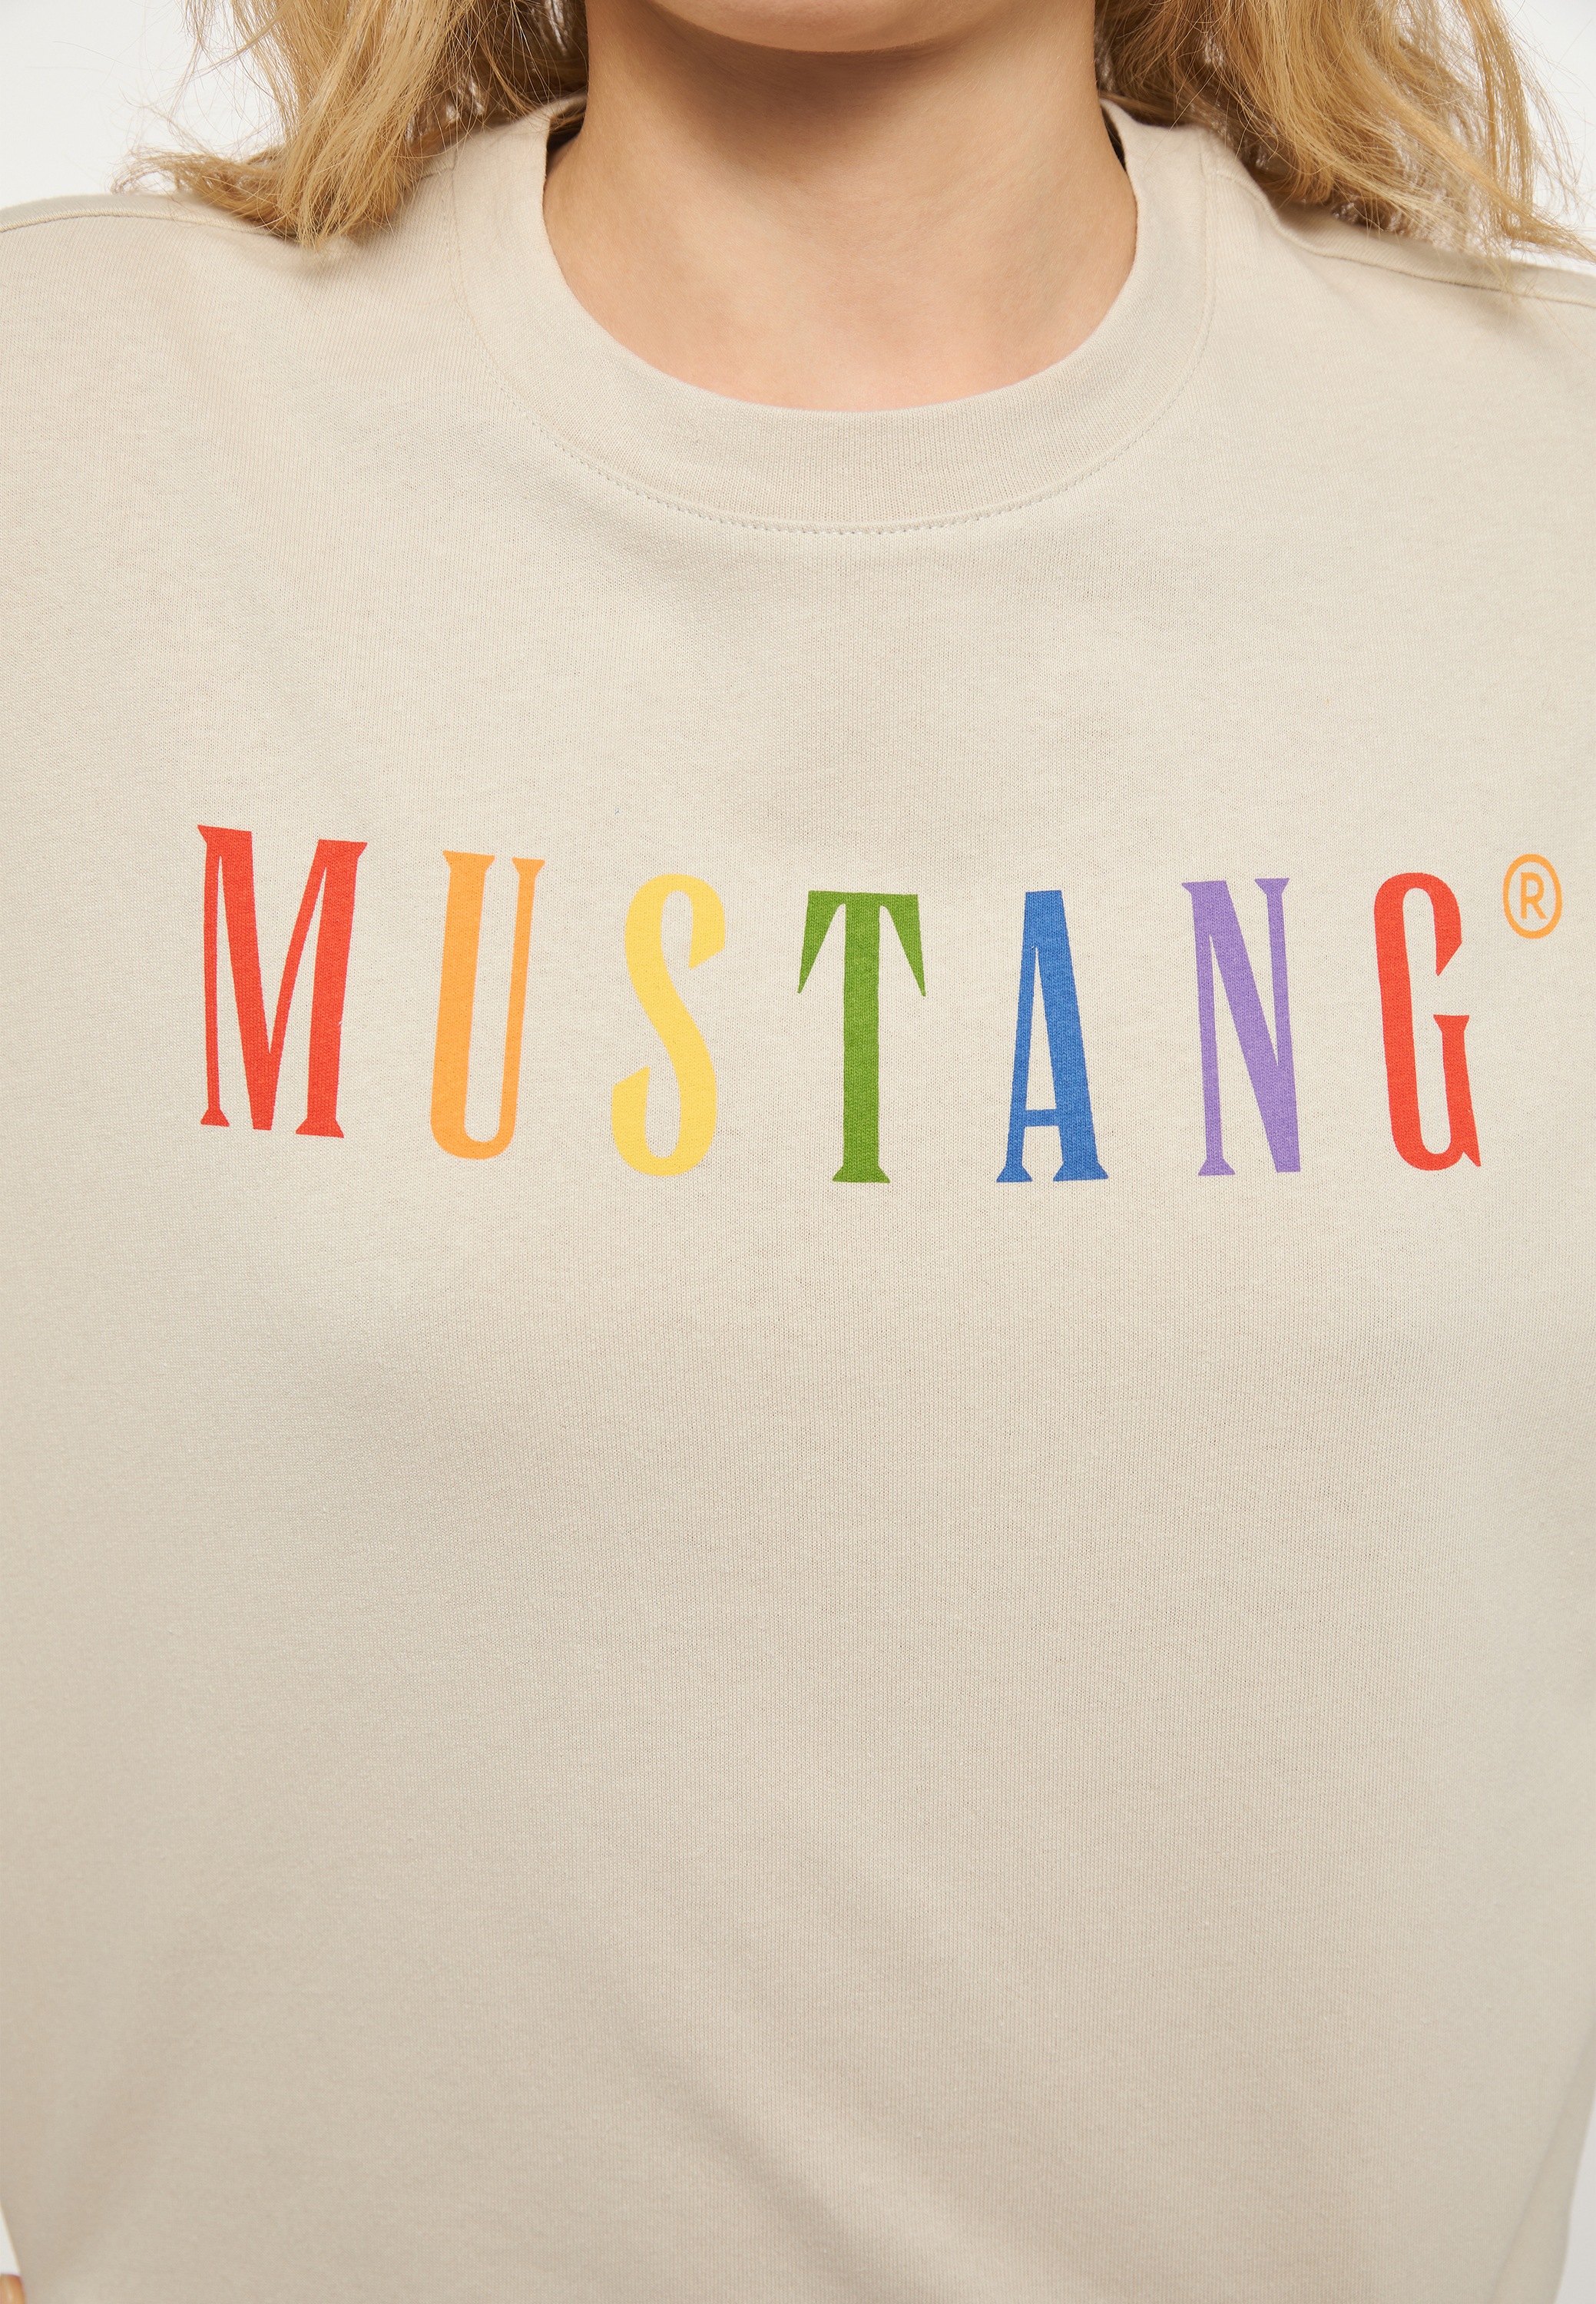 Kurzarmshirt OTTOversand bei MUSTANG »Mustang T-Shirt« T-Shirt